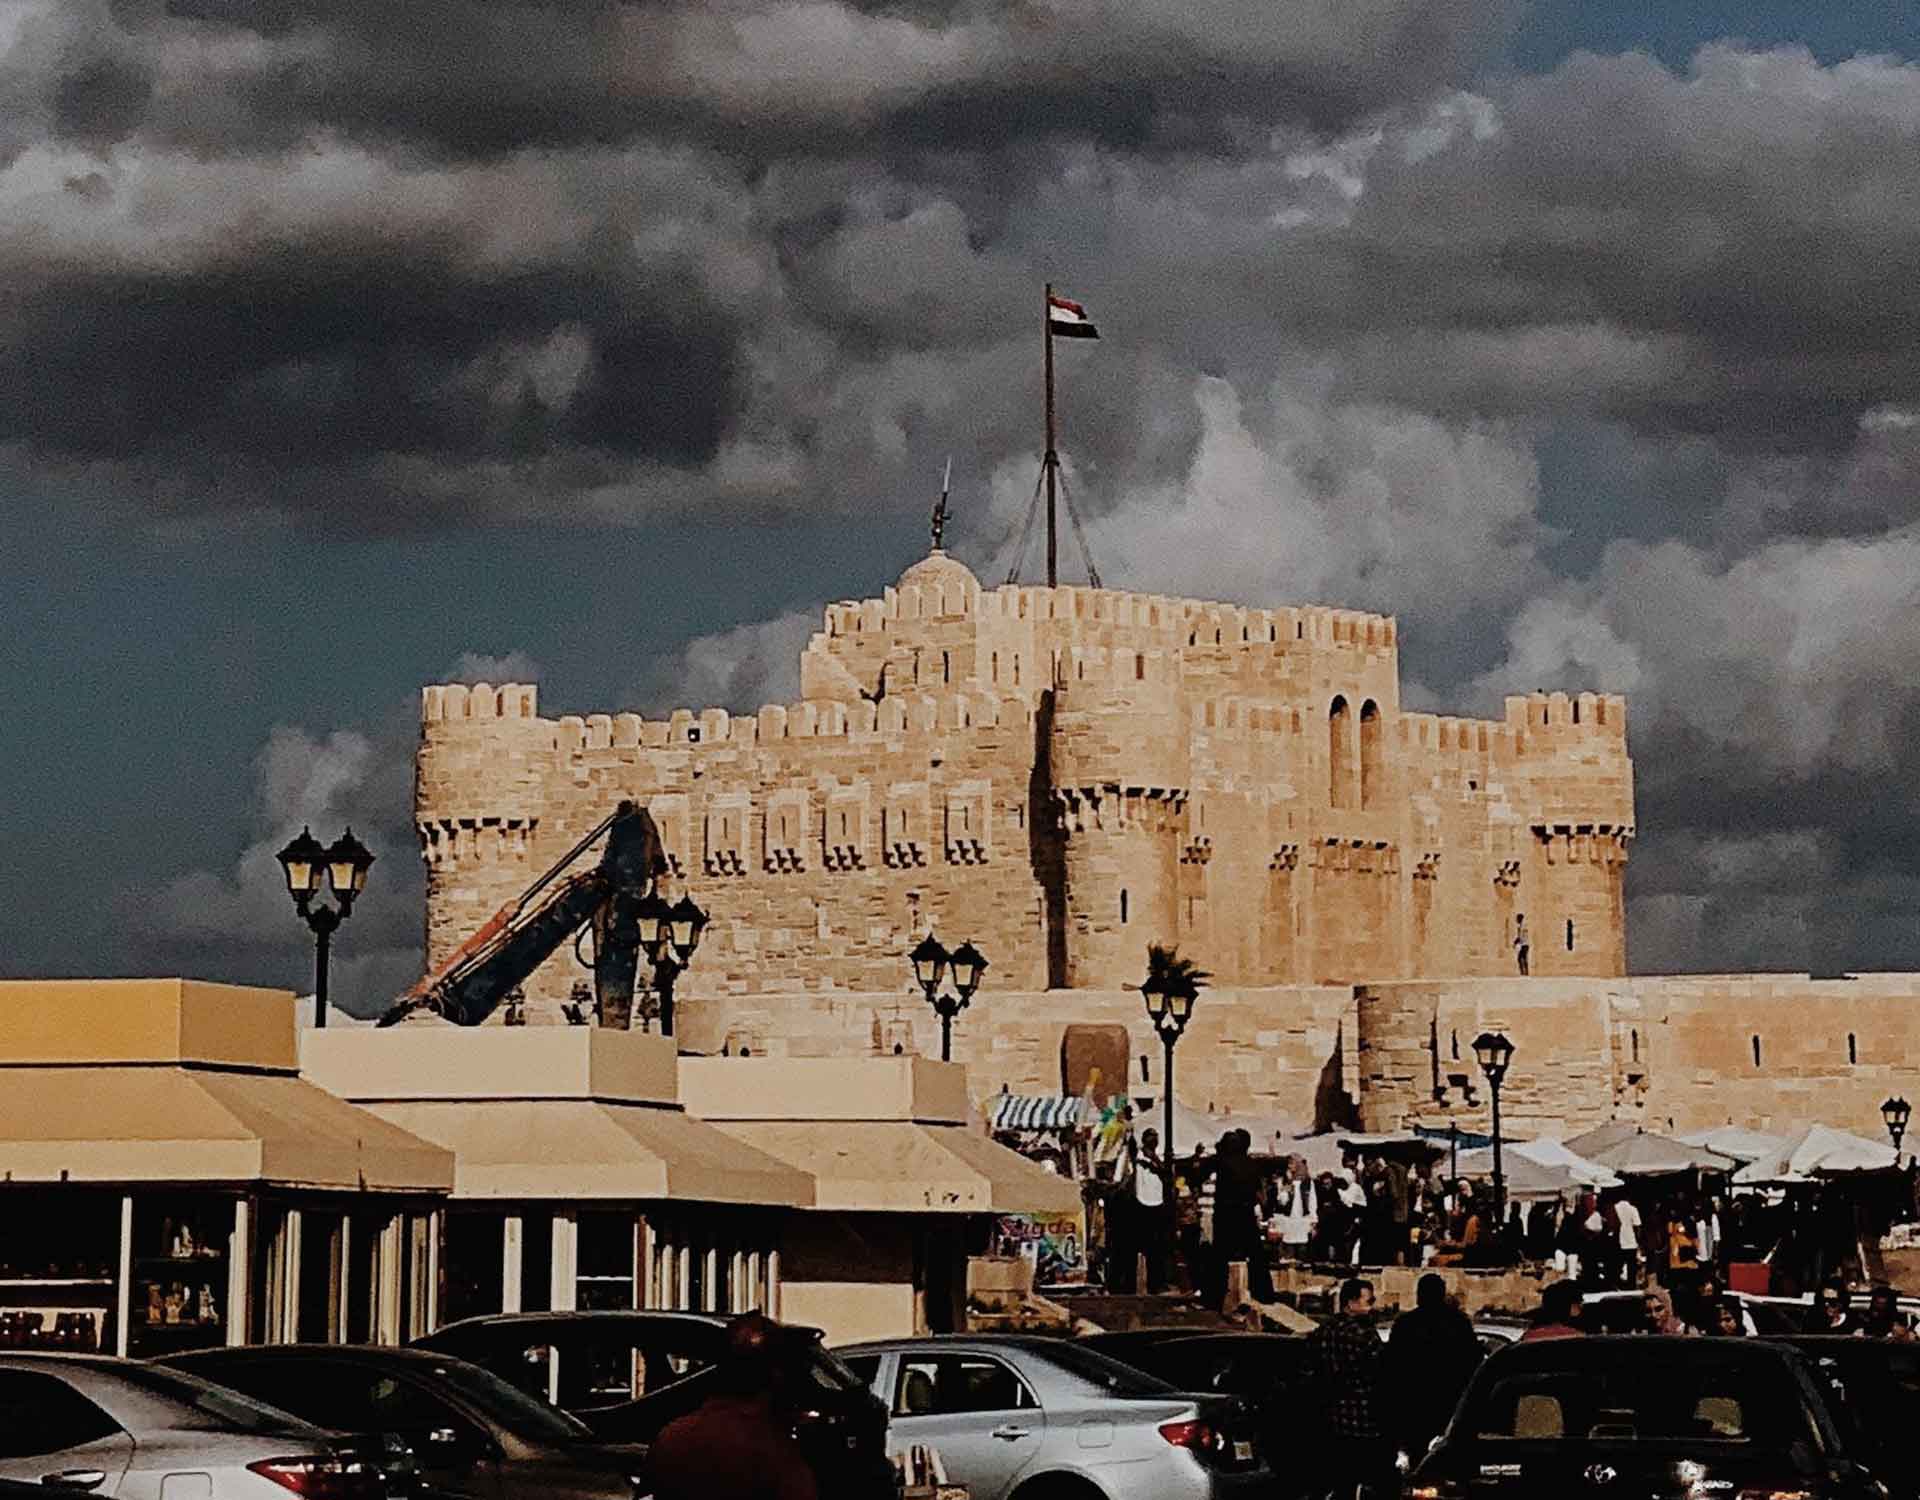 Alexandria Citadel of Qaitbay